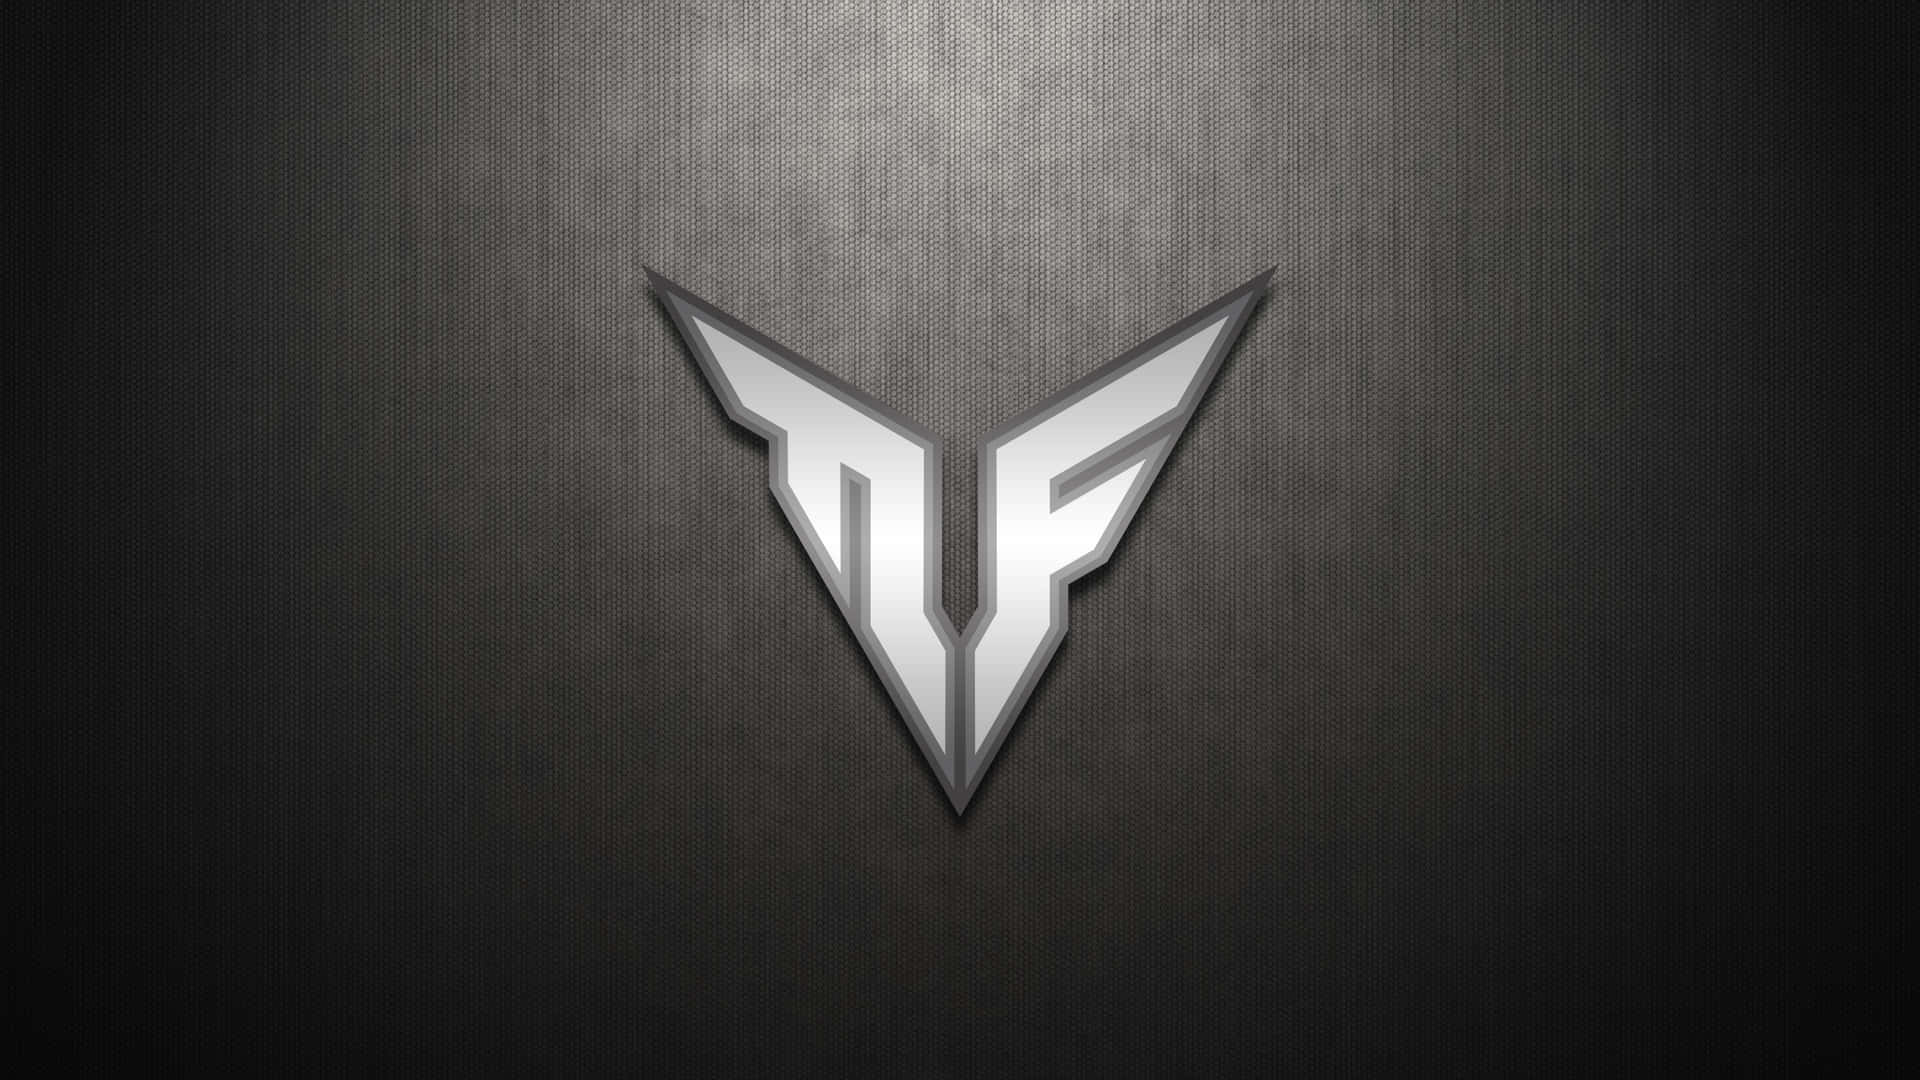 Asus T U F Gaming Logo Wallpaper Background